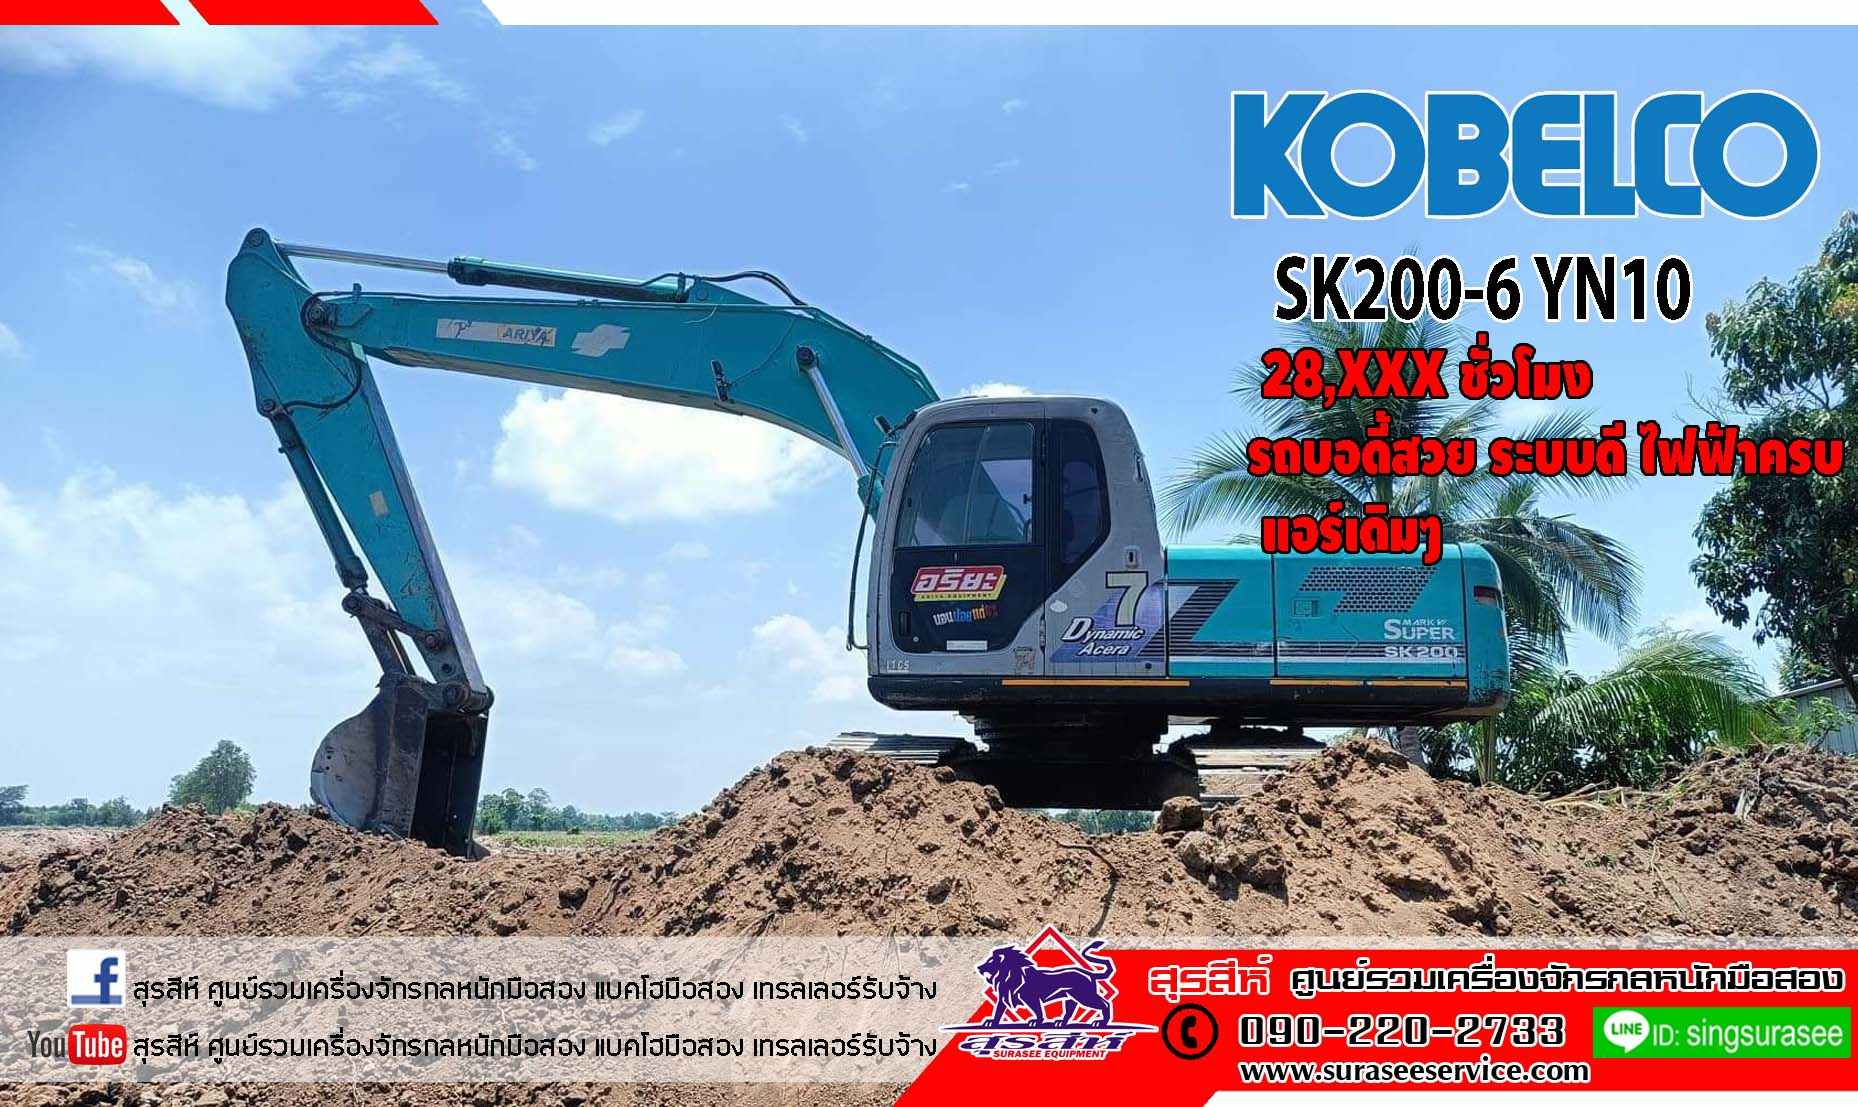 KOBELCO SK200-6 YN10   รถบอดี้สวย ระบบดี ไฟฟ้าครบ